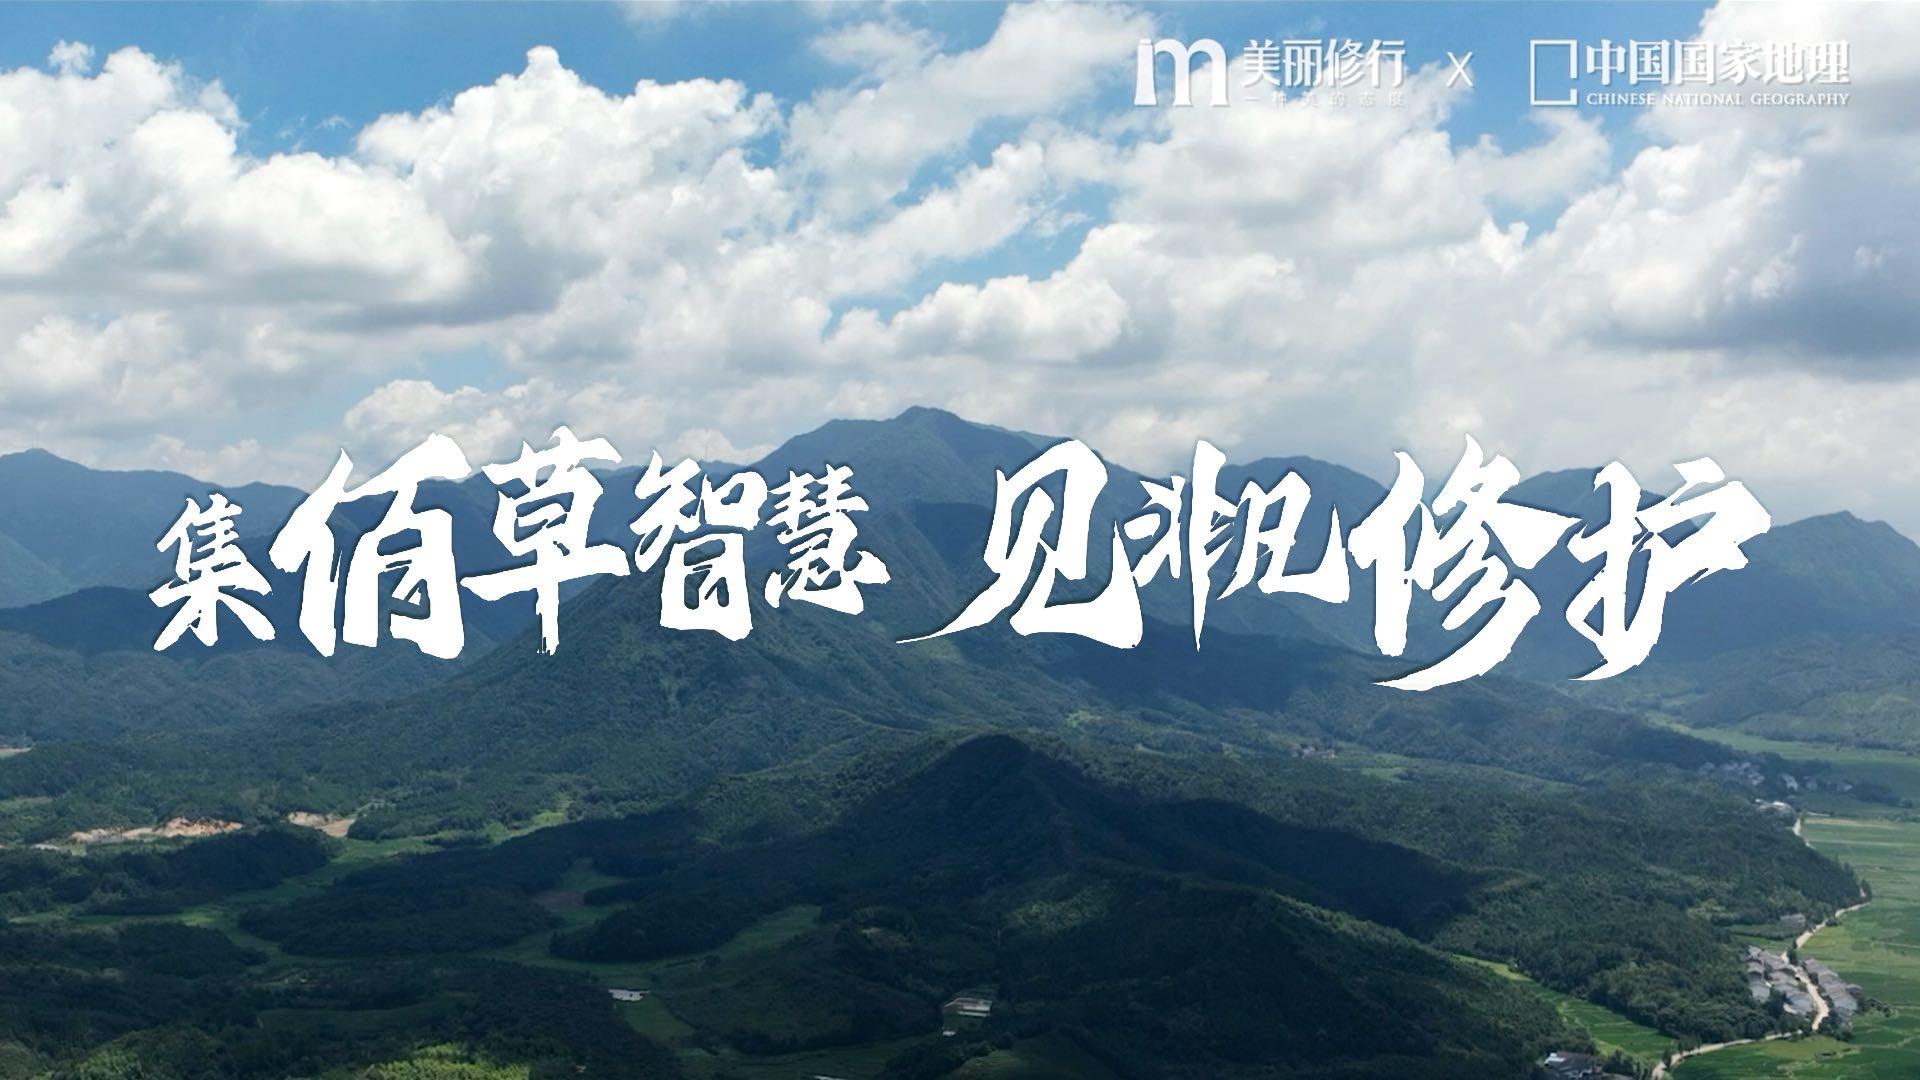 中国国家地理X美丽修行「这就是中国成分」佰草集特辑